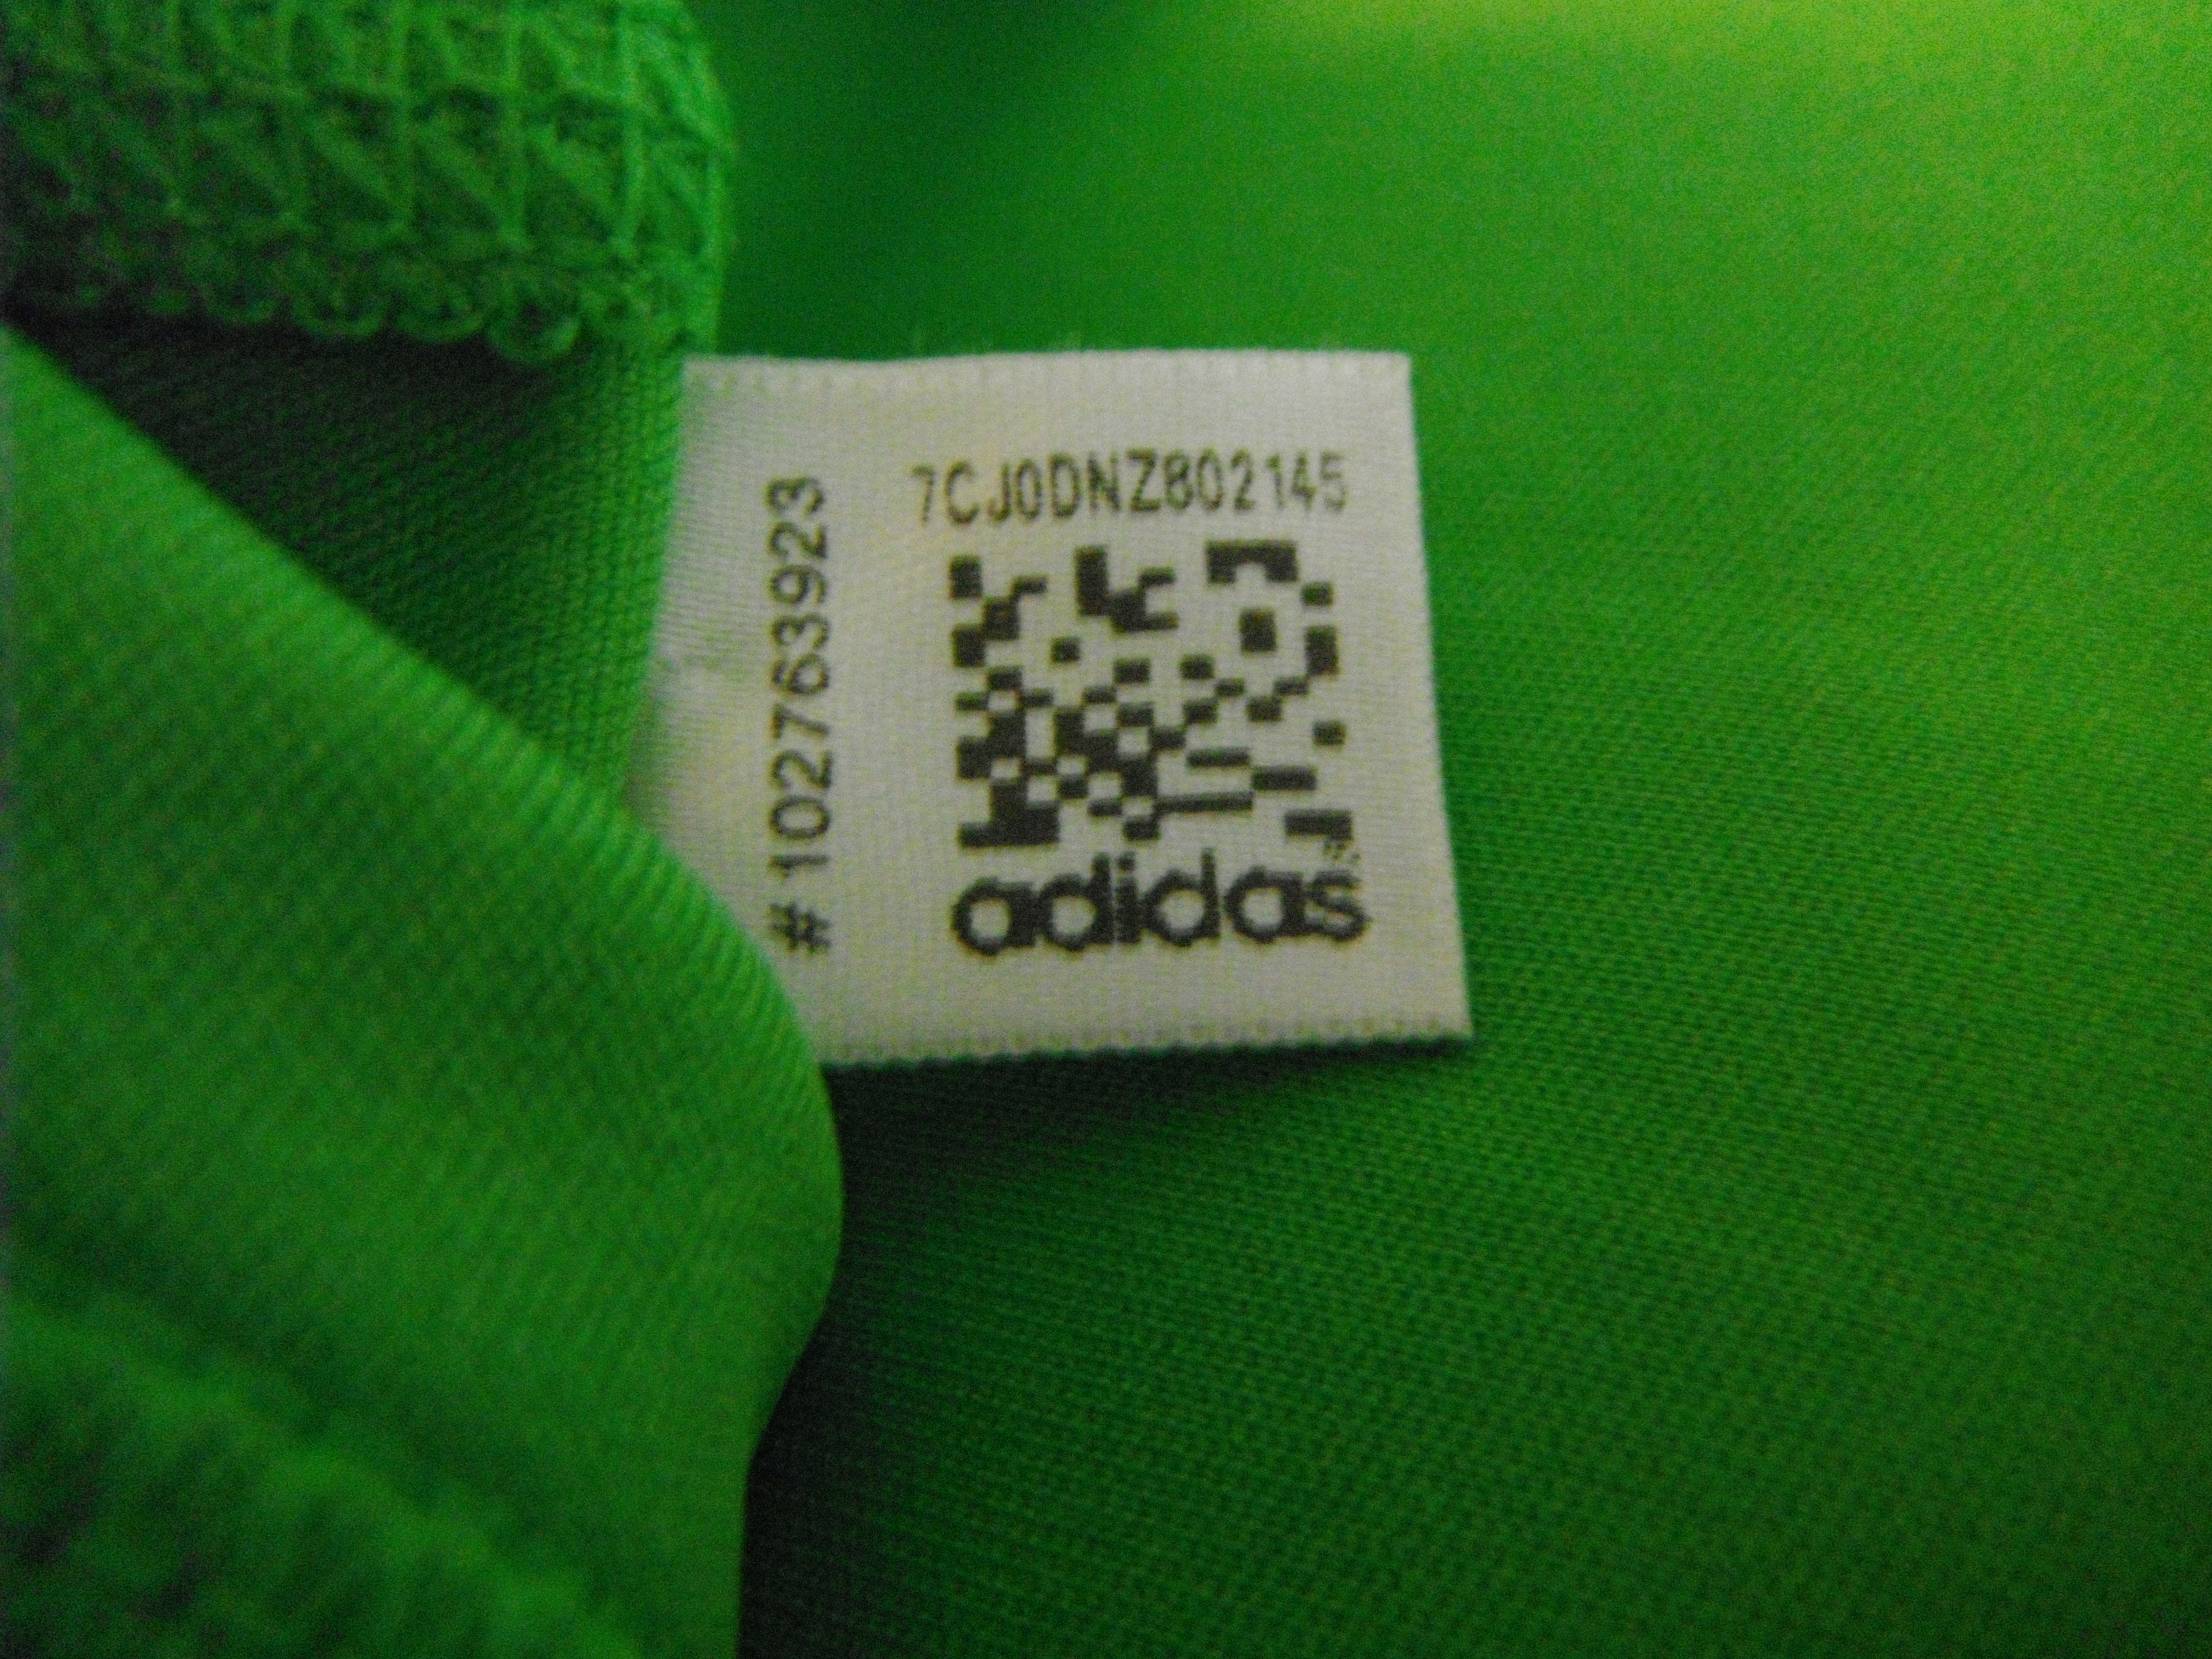 Qr код одежды. Adidas QR code. QR код на одежде. Бирка с QR кодом на одежде. QR код adidas.